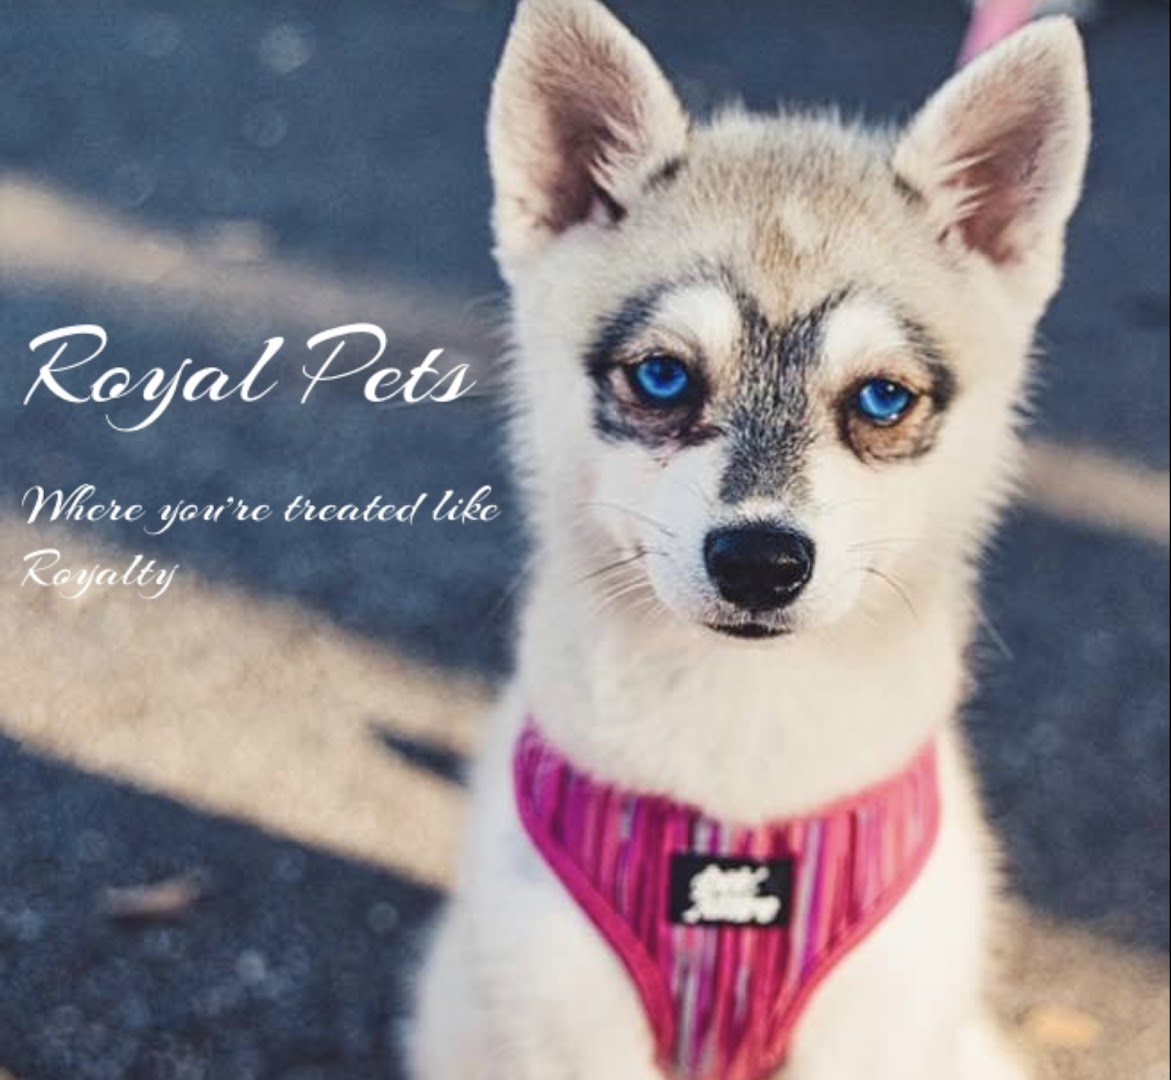 Royal Pets Market, Resort, Veterinary Center